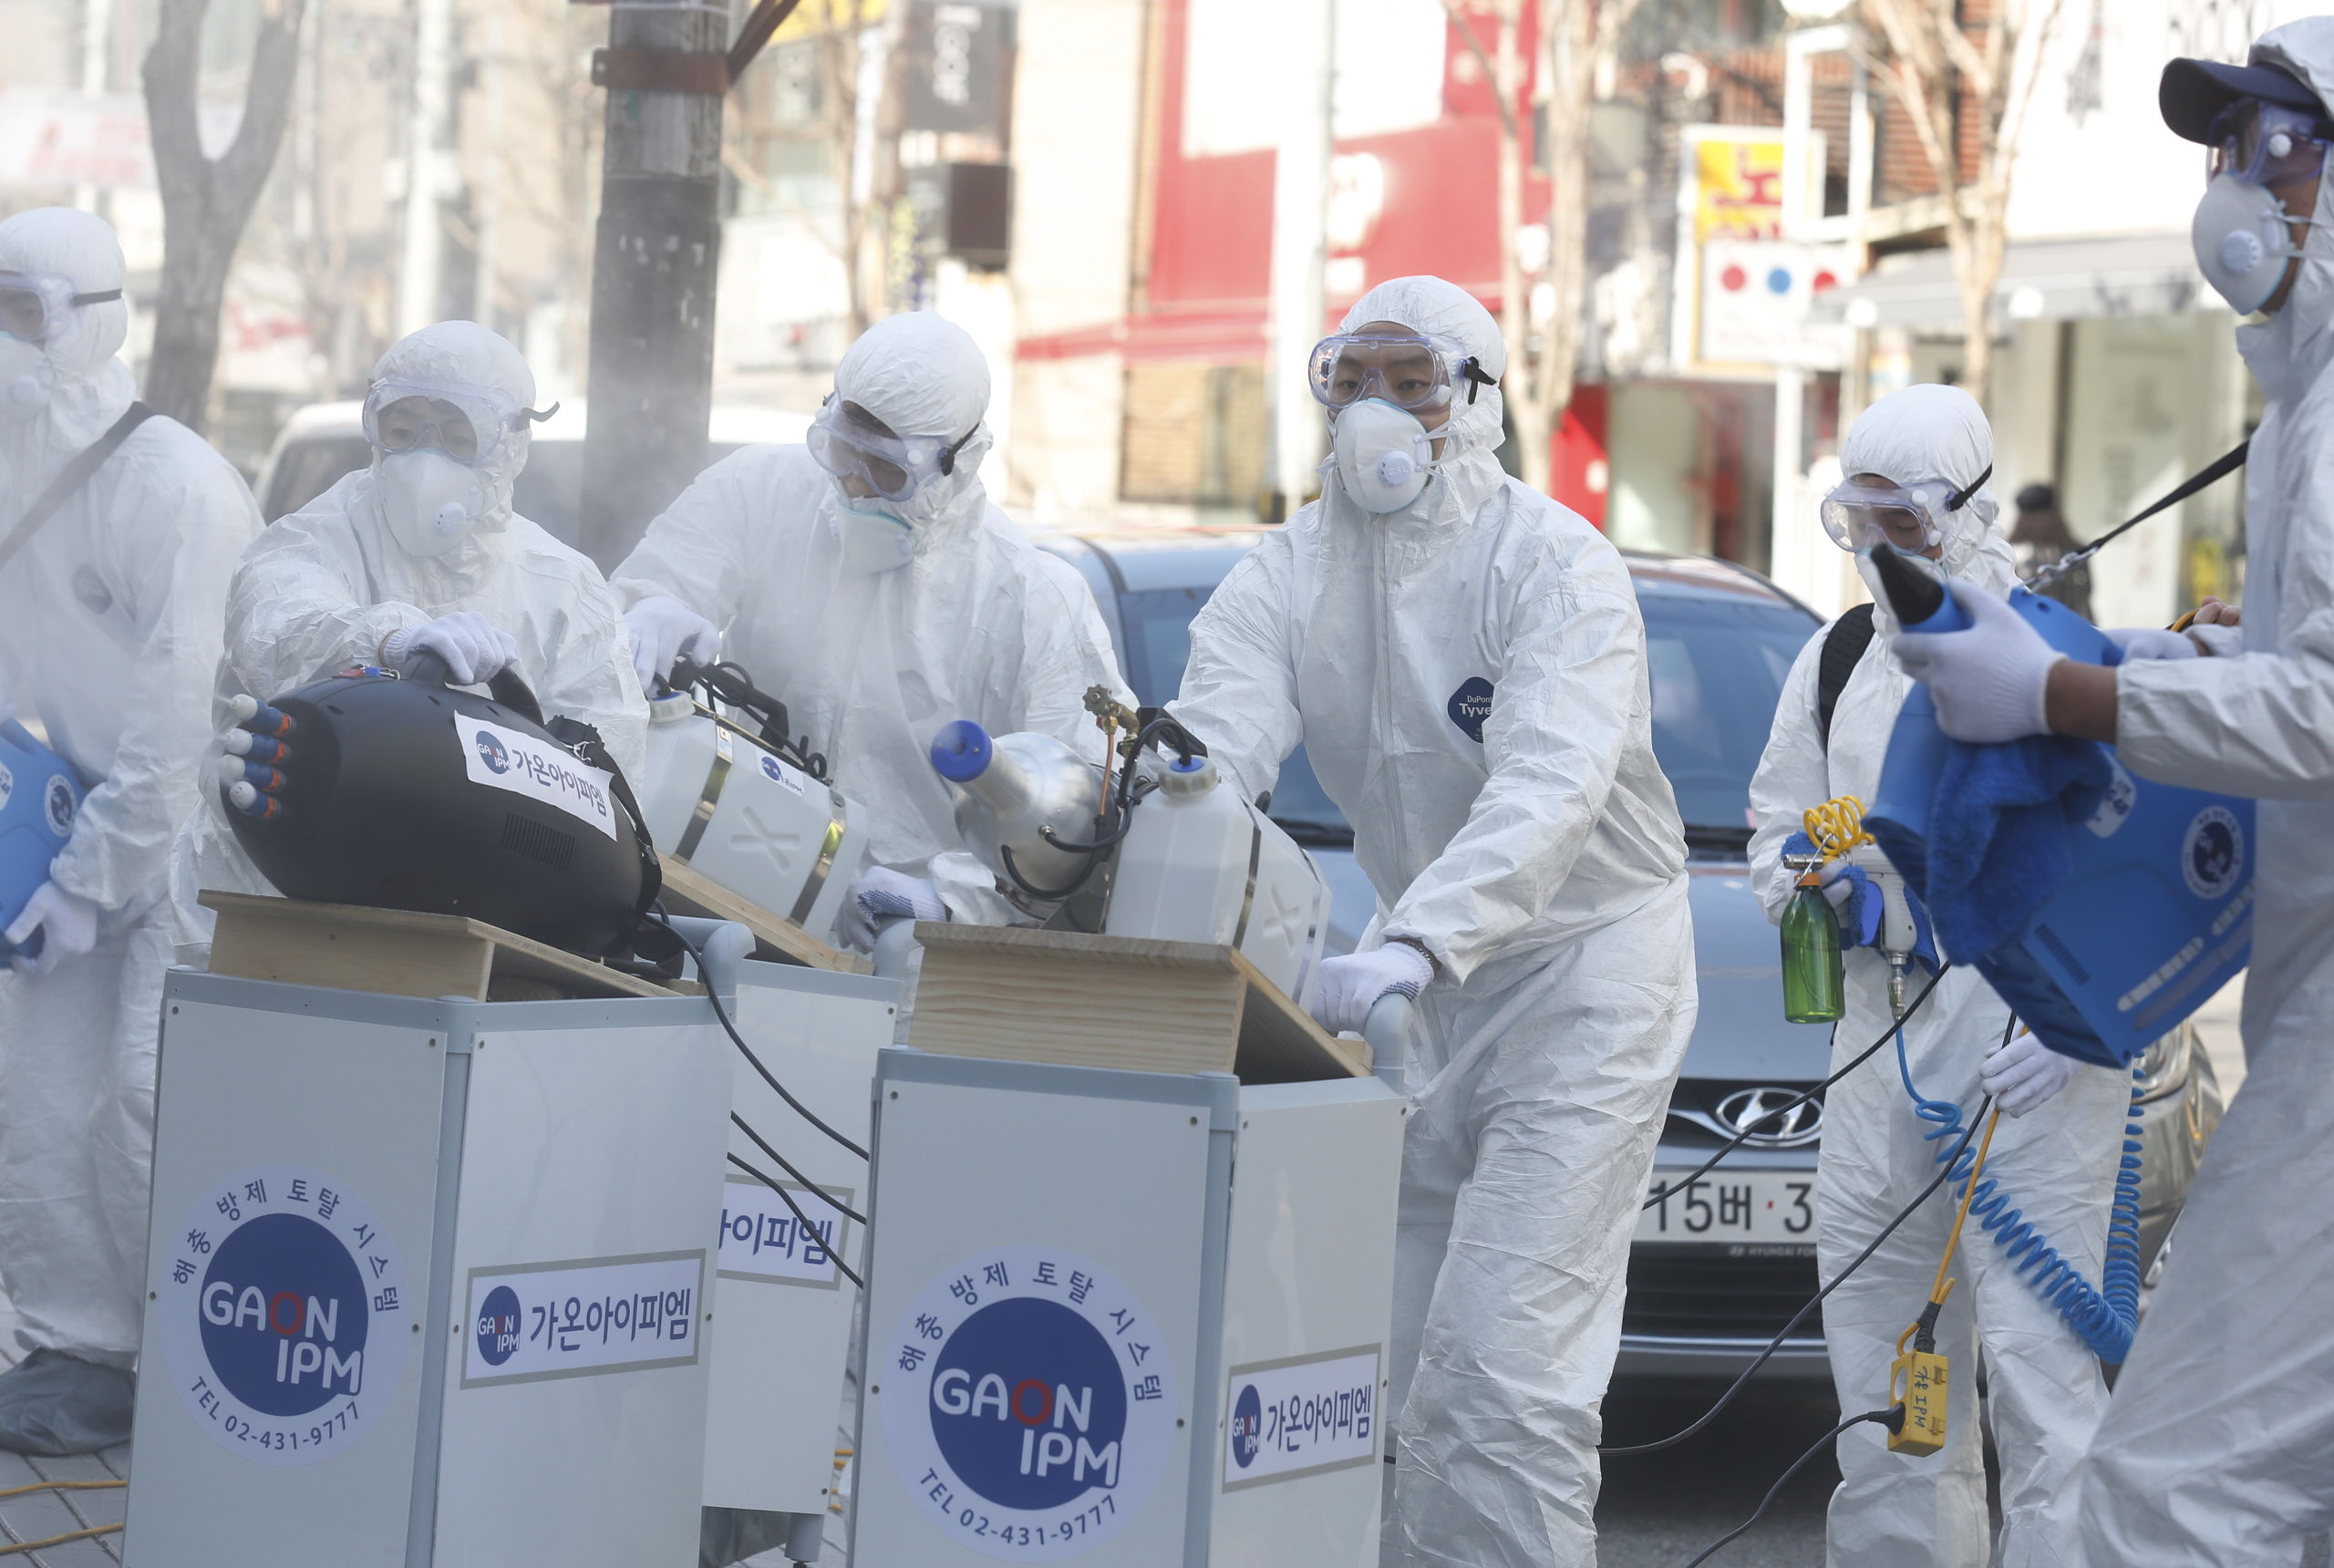  Er wordt met desinfecterende spray gespoten op straat in Seoul, Zuid-Korea. In dat land kwamen al 13 mensen om het leven doordat zij besmet raakten met het coronavirus